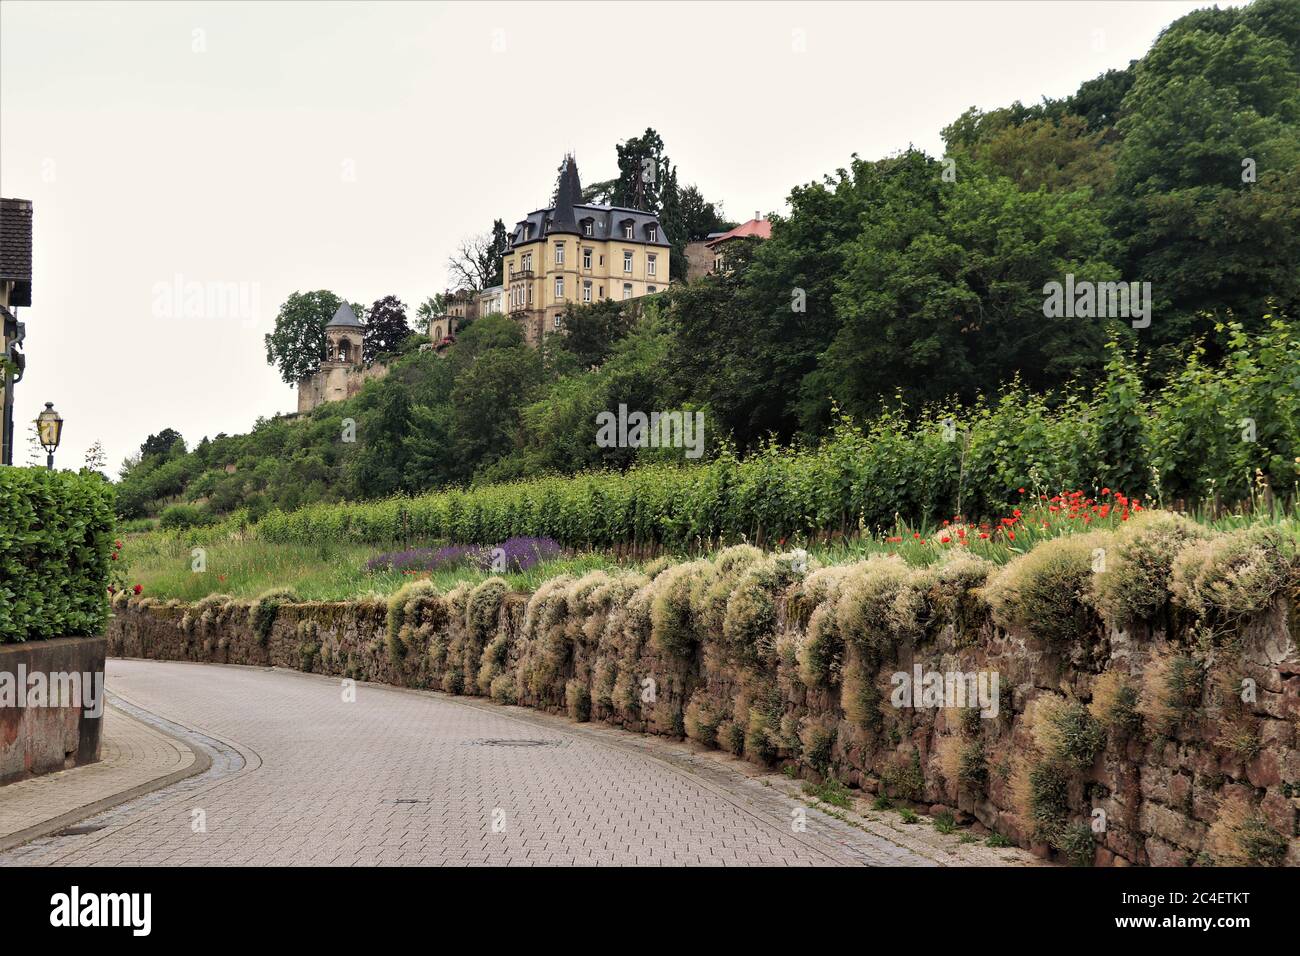 Vignobles et vieilles maisons dans le pays du vin allemand. Haardt, Allemagne Banque D'Images